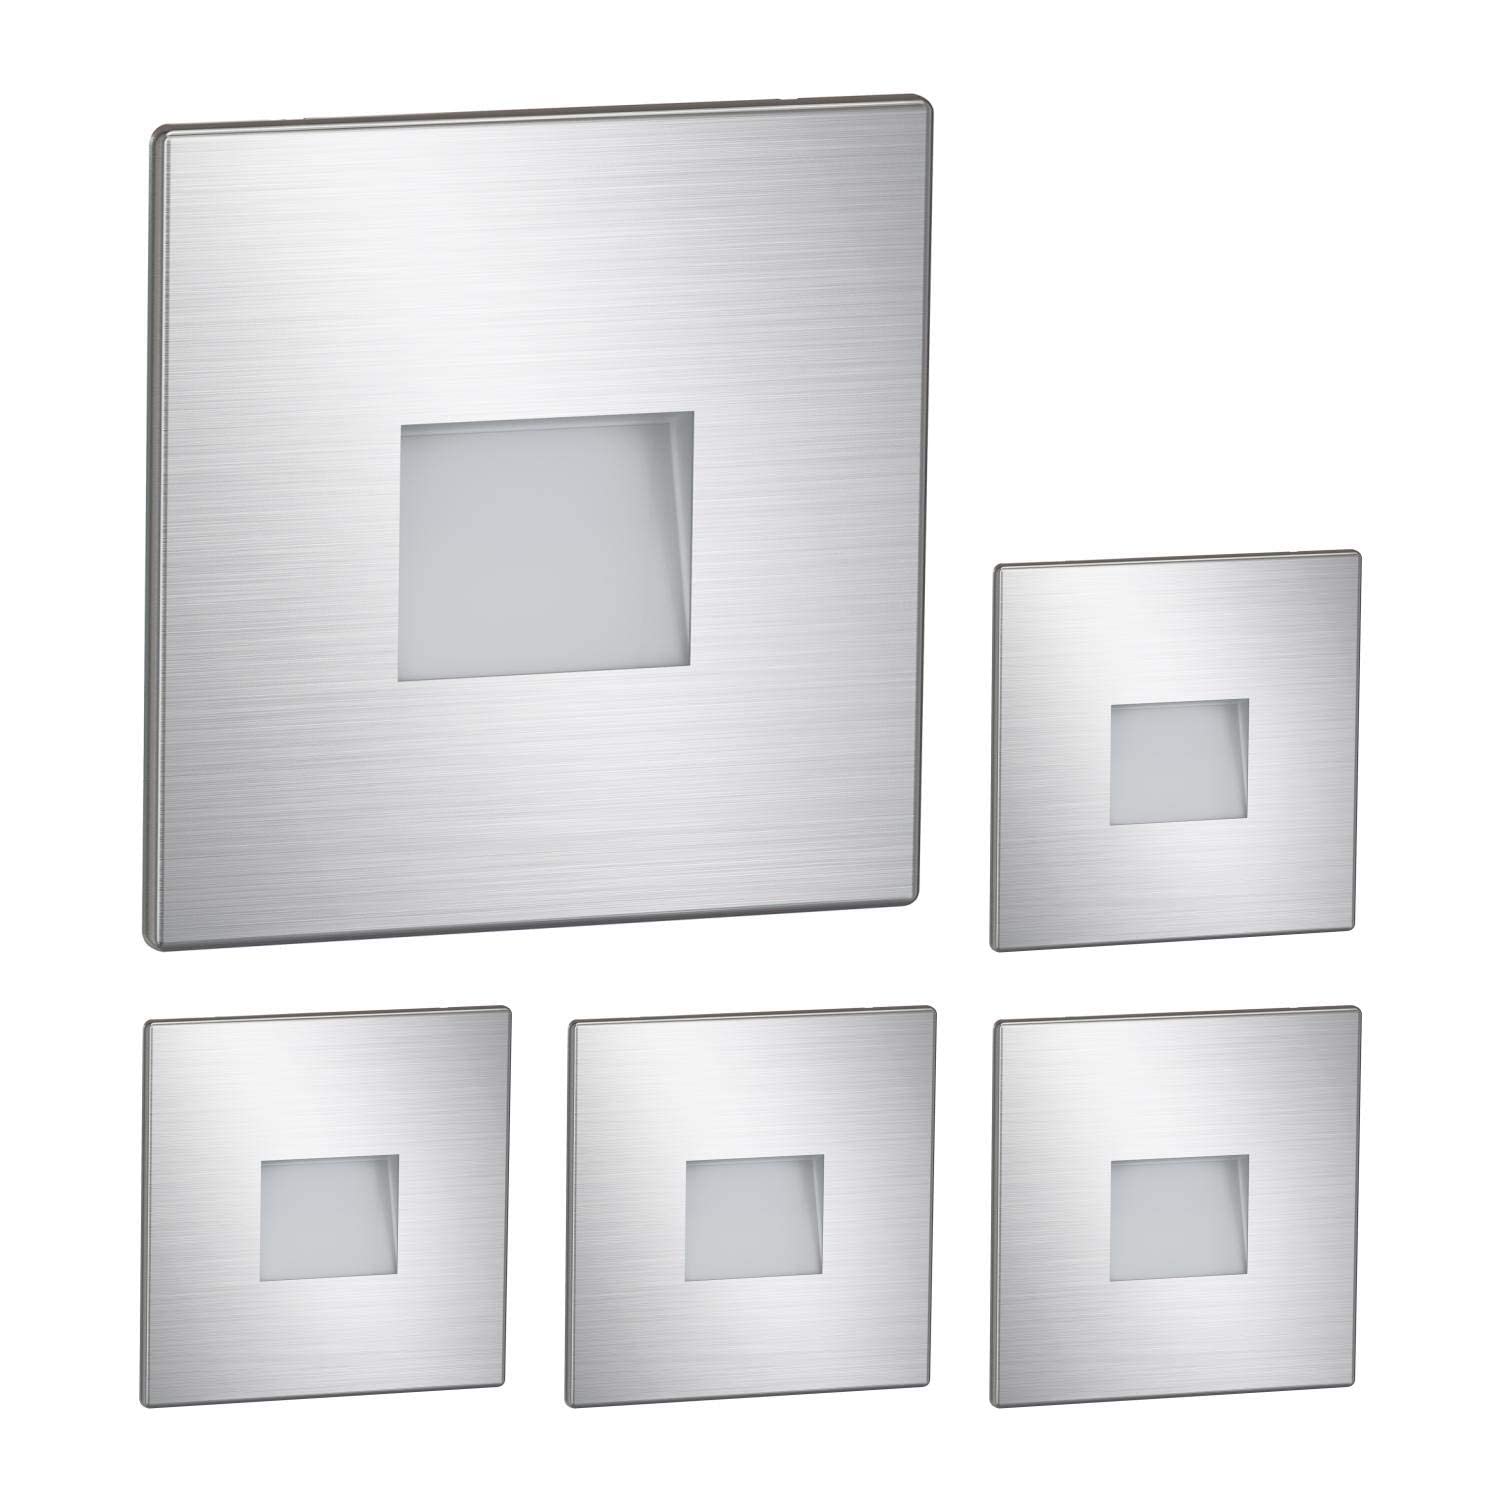 ledscom.de 5 Stück LED Treppenlicht/Wandeinbauleuchte FOW für innen und außen, Downlight, eckig, edelstahl, 85 x 85mm, kaltweiß